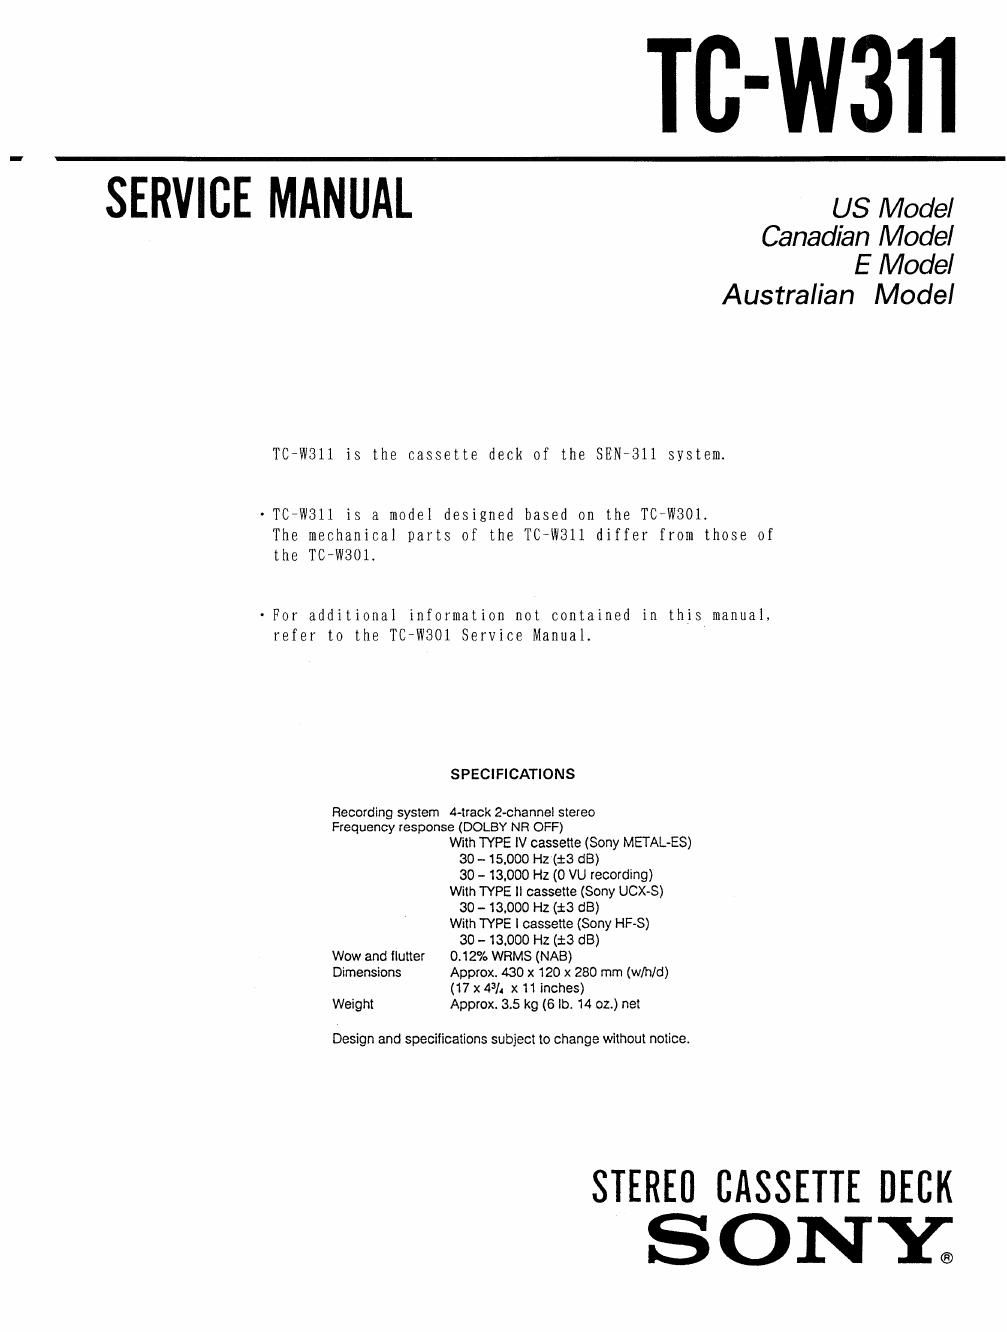 sony tc w 311 service manual